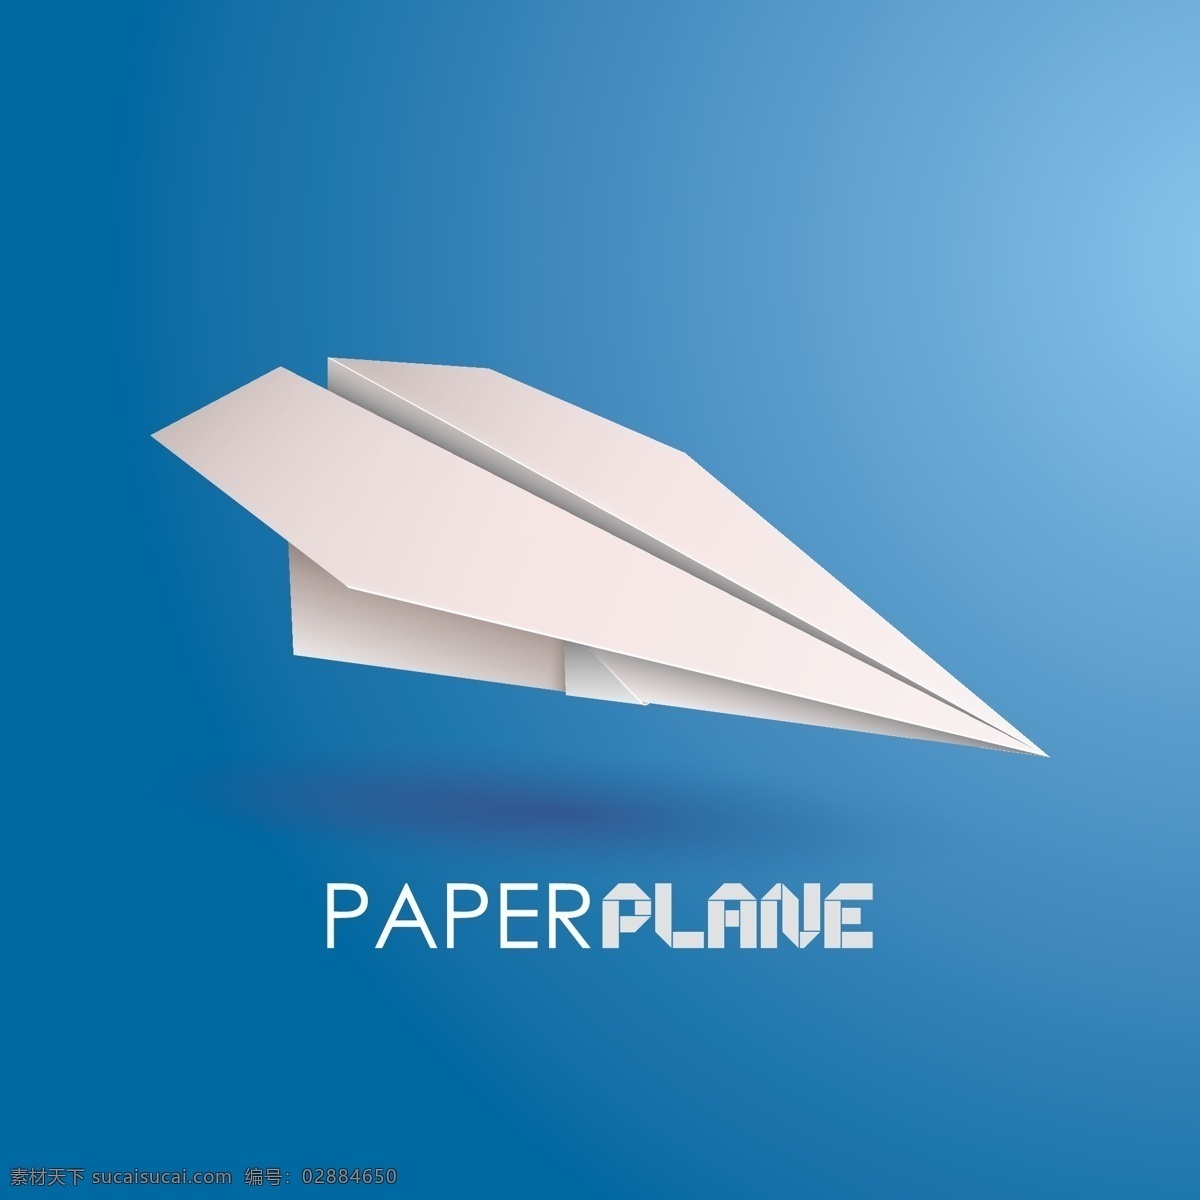 纸飞机 折纸 童趣 插画 背景 海报